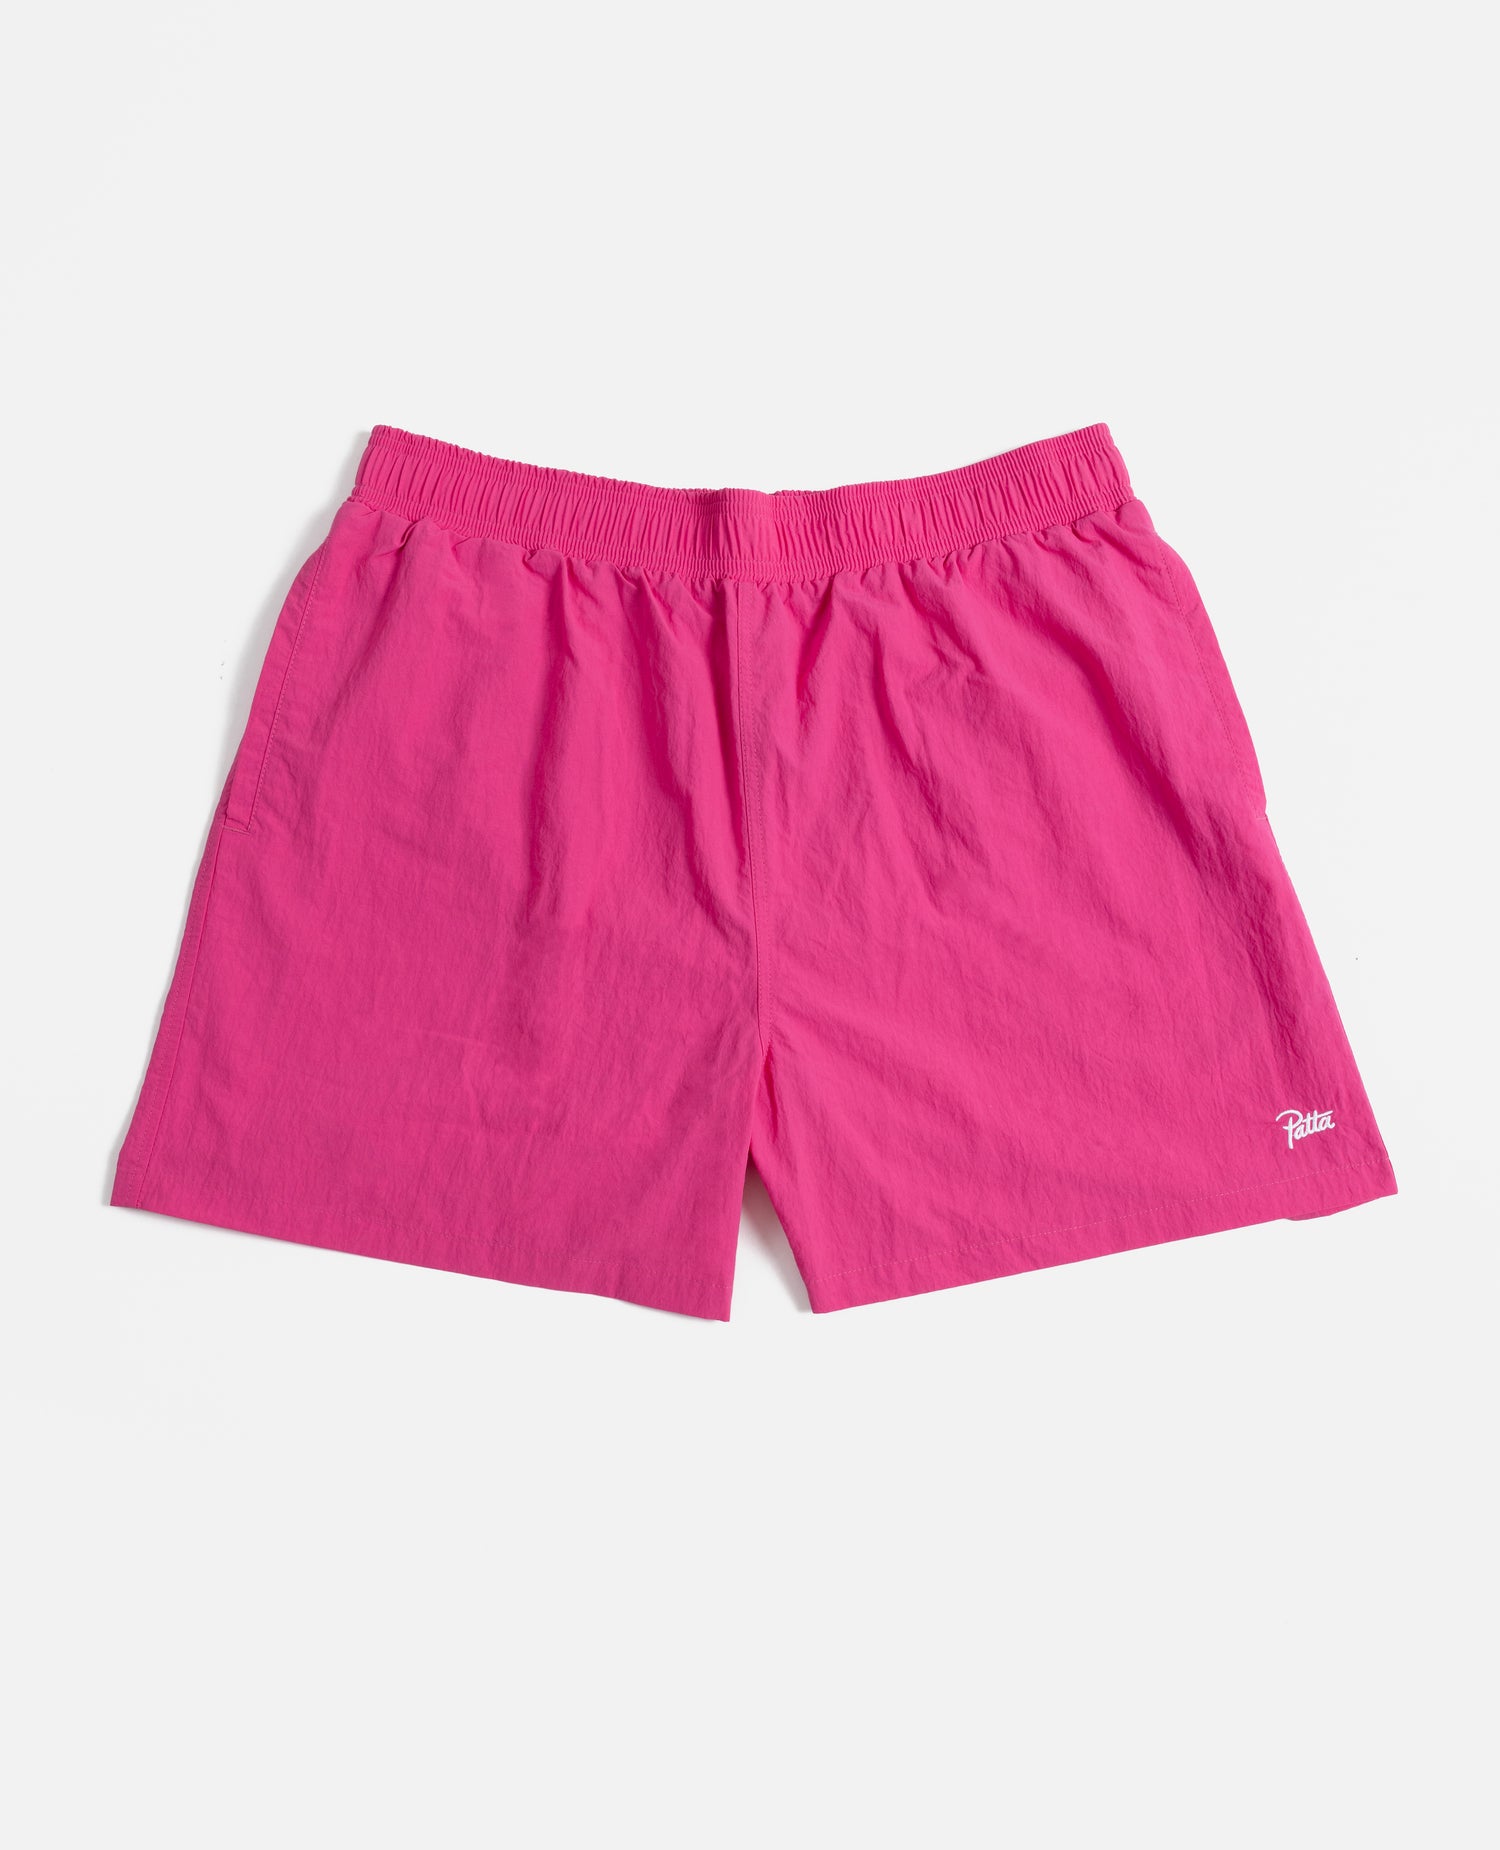 Patta Basic Nylon Swim Shorts (Rose Violet)